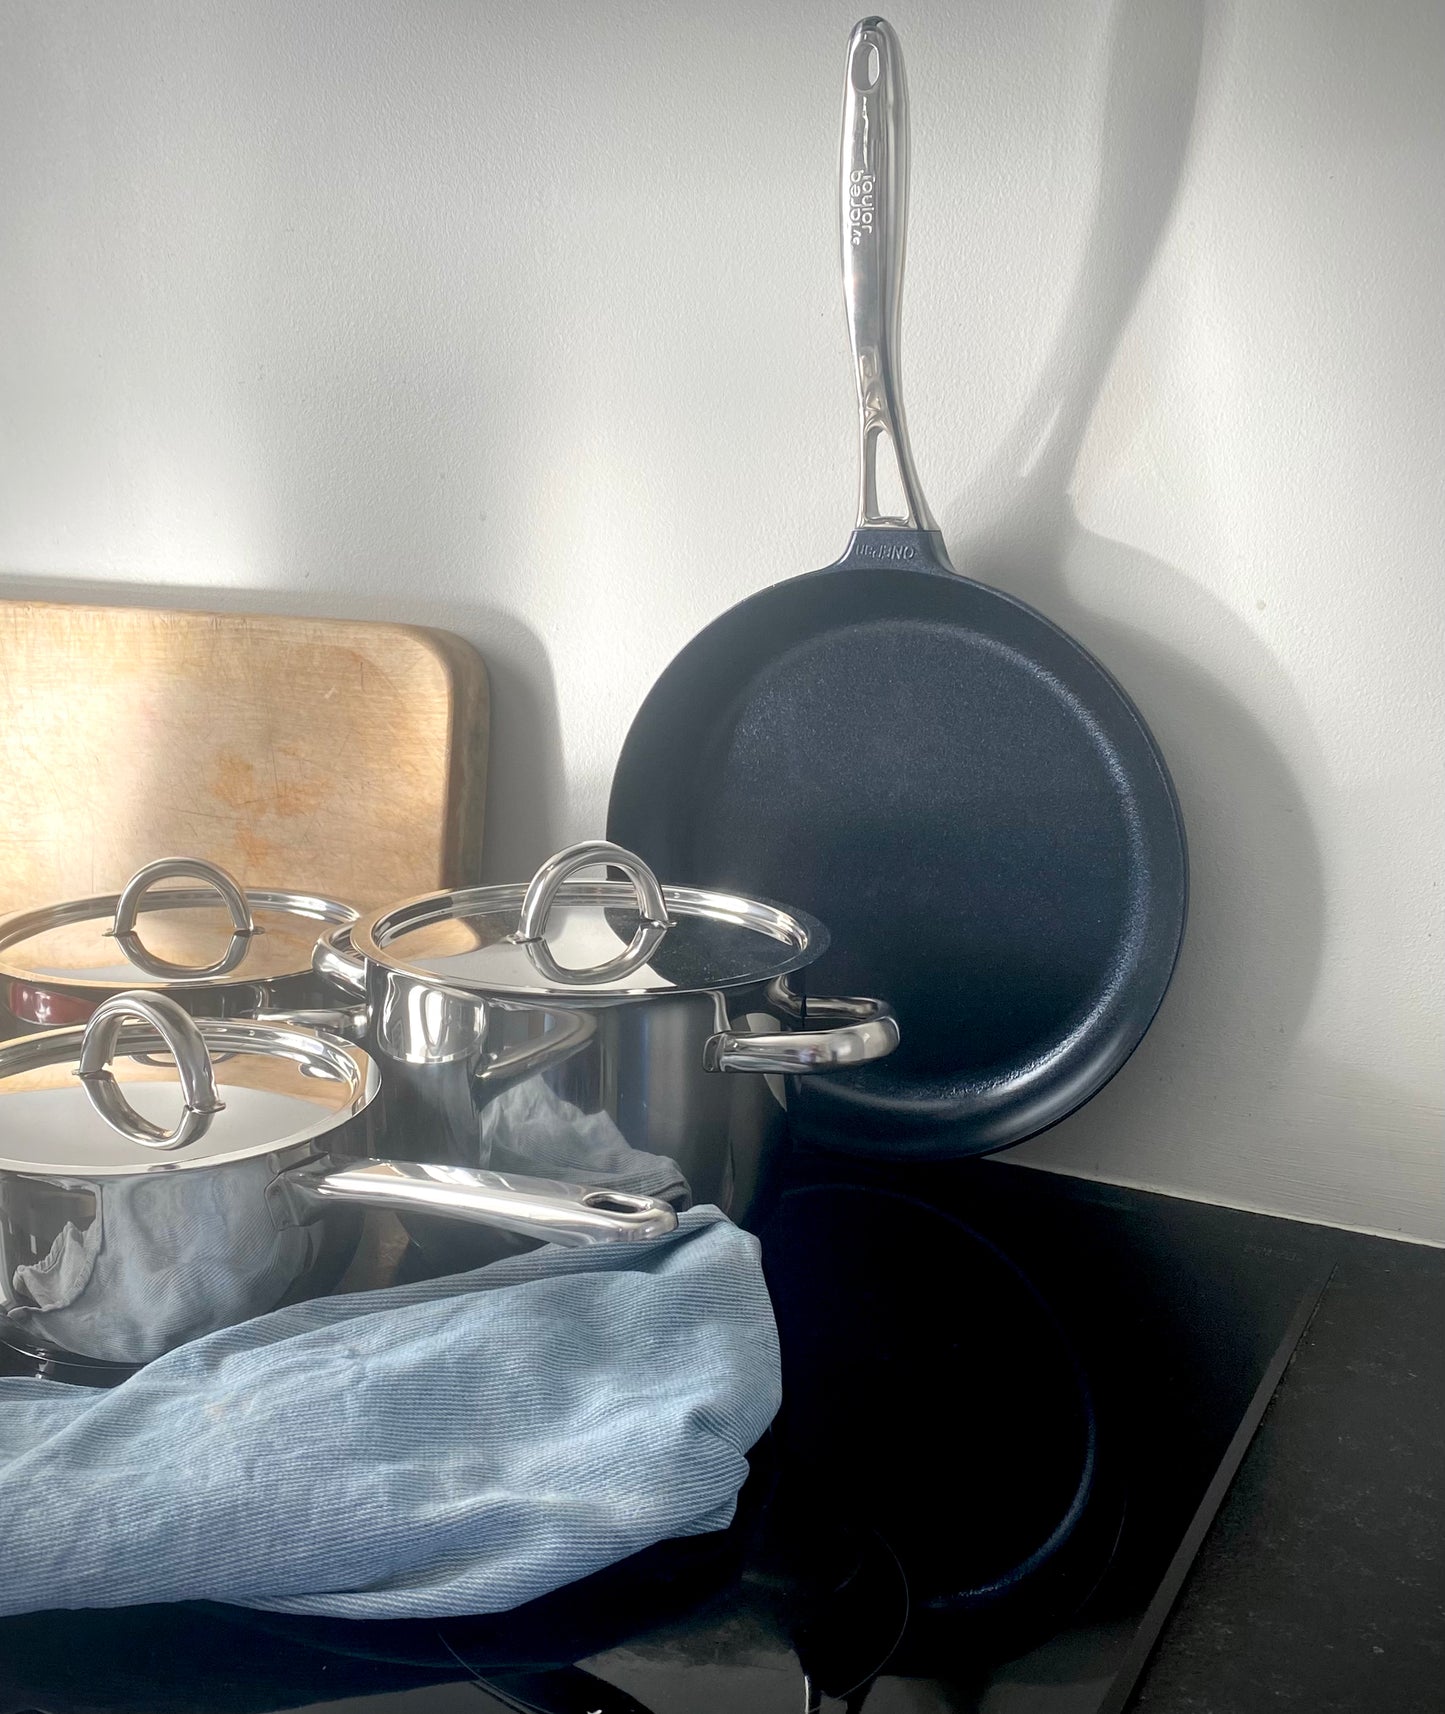 PREMIUM Kitchen utensils kit